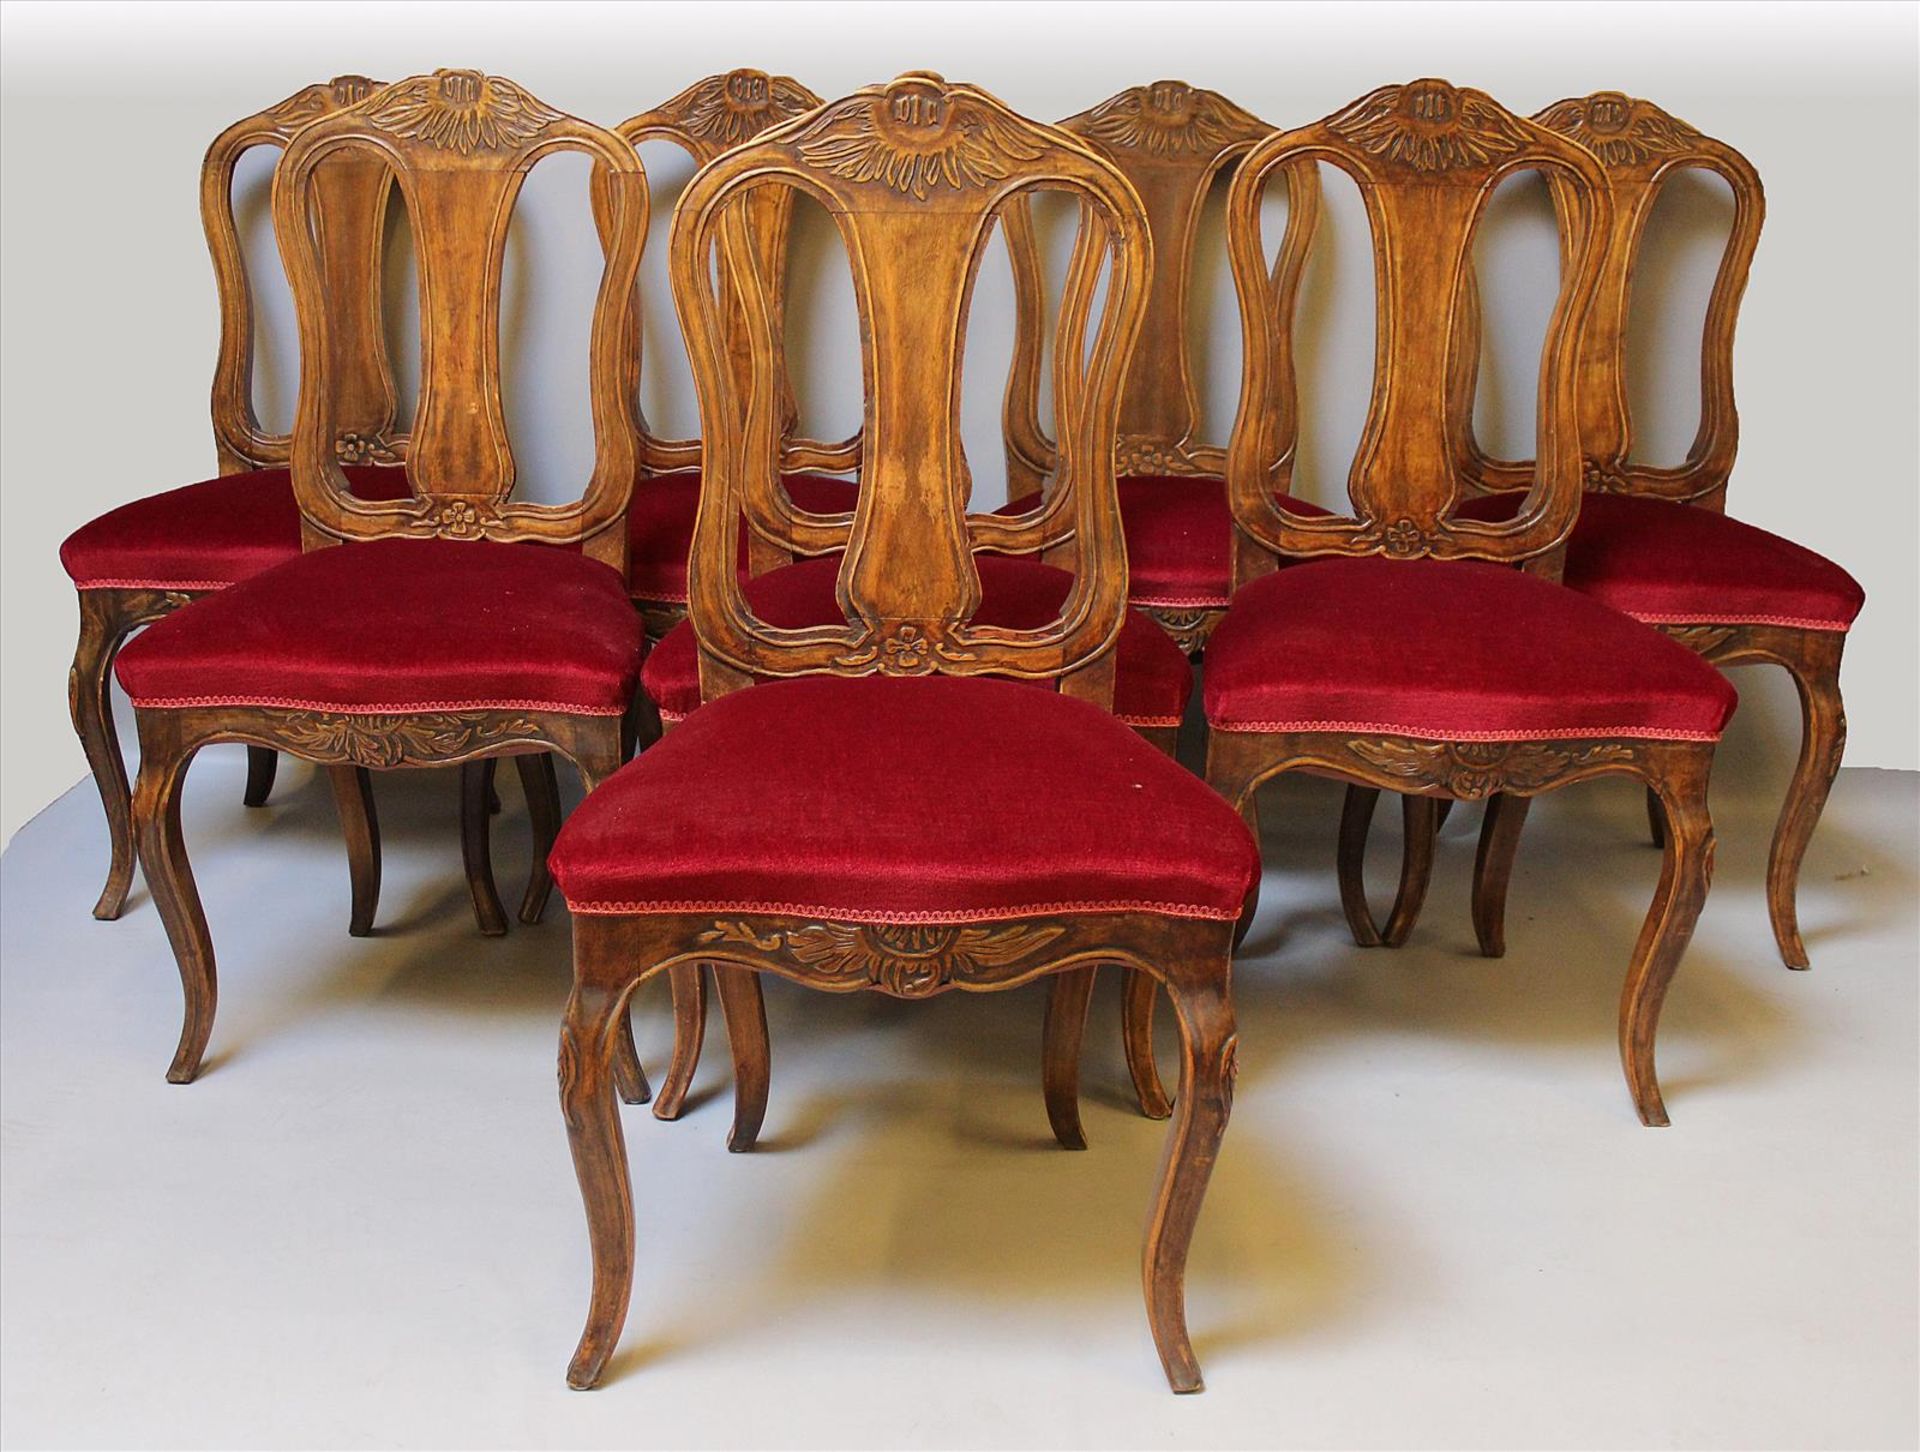 Satz von acht Stühlen im Barockstil.Eiche. Geschweifte Gestelle mit geschnitzten Rocaillen.